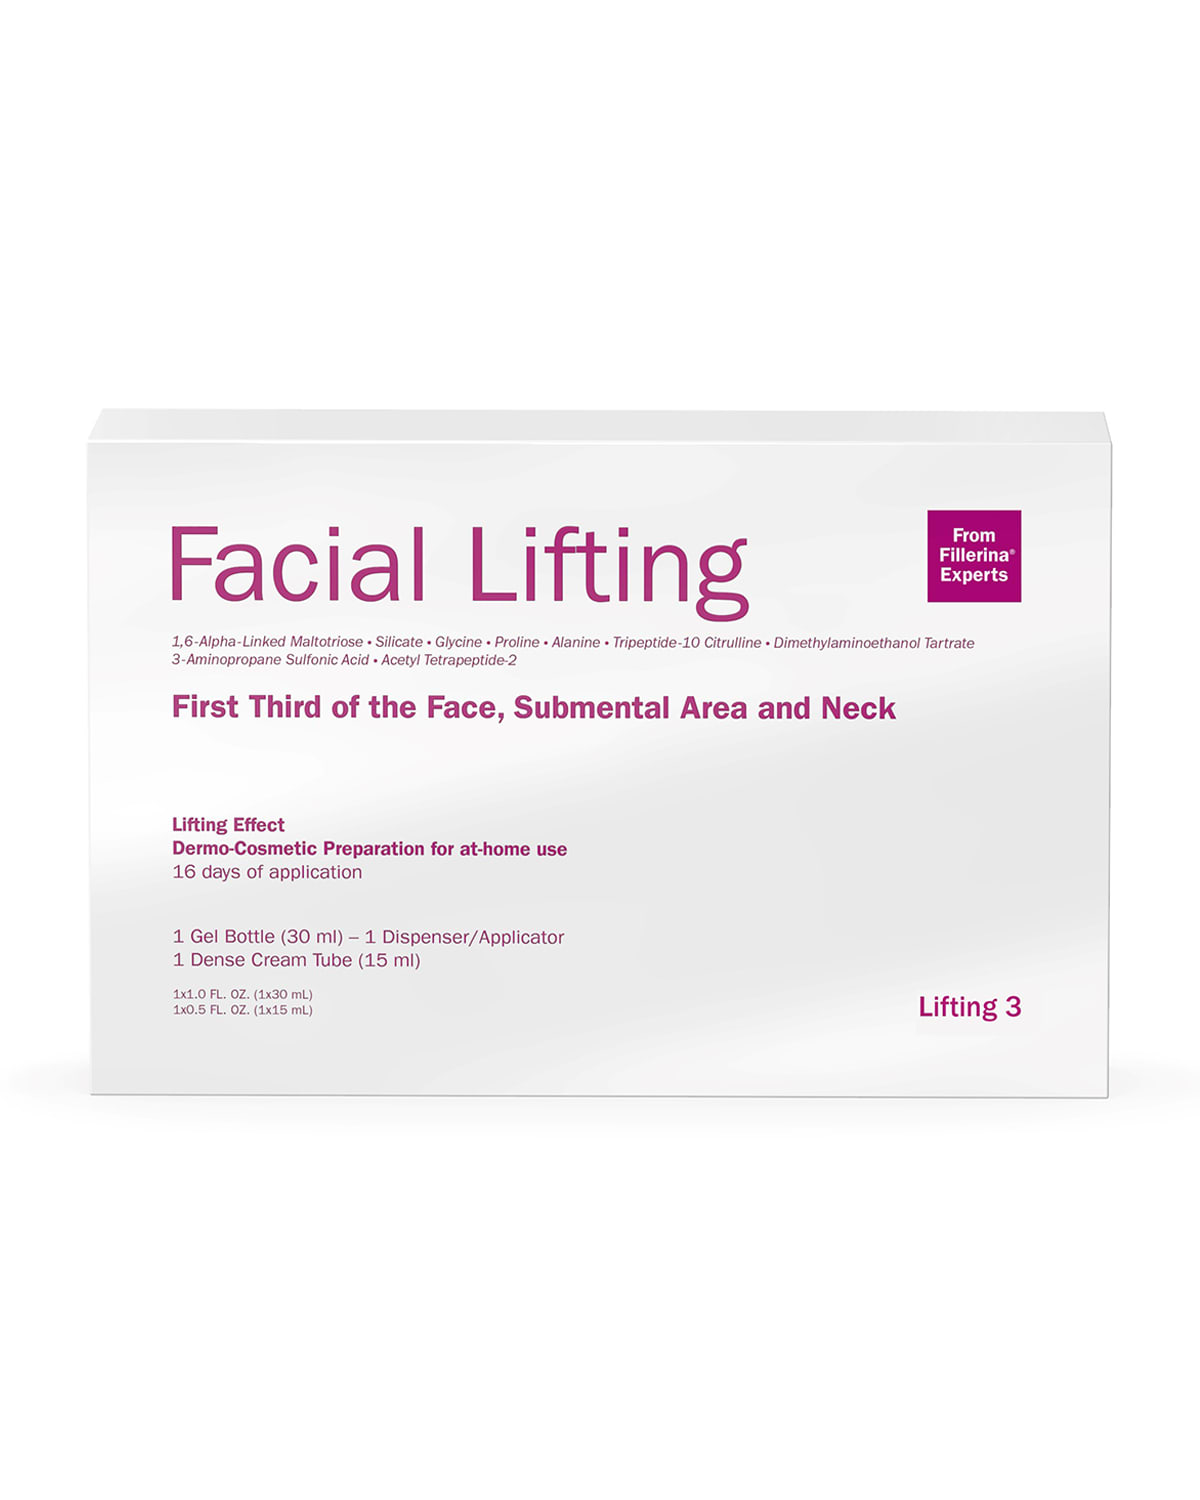 Fillerina Labo Facial Lifting Treatment, Grade 3